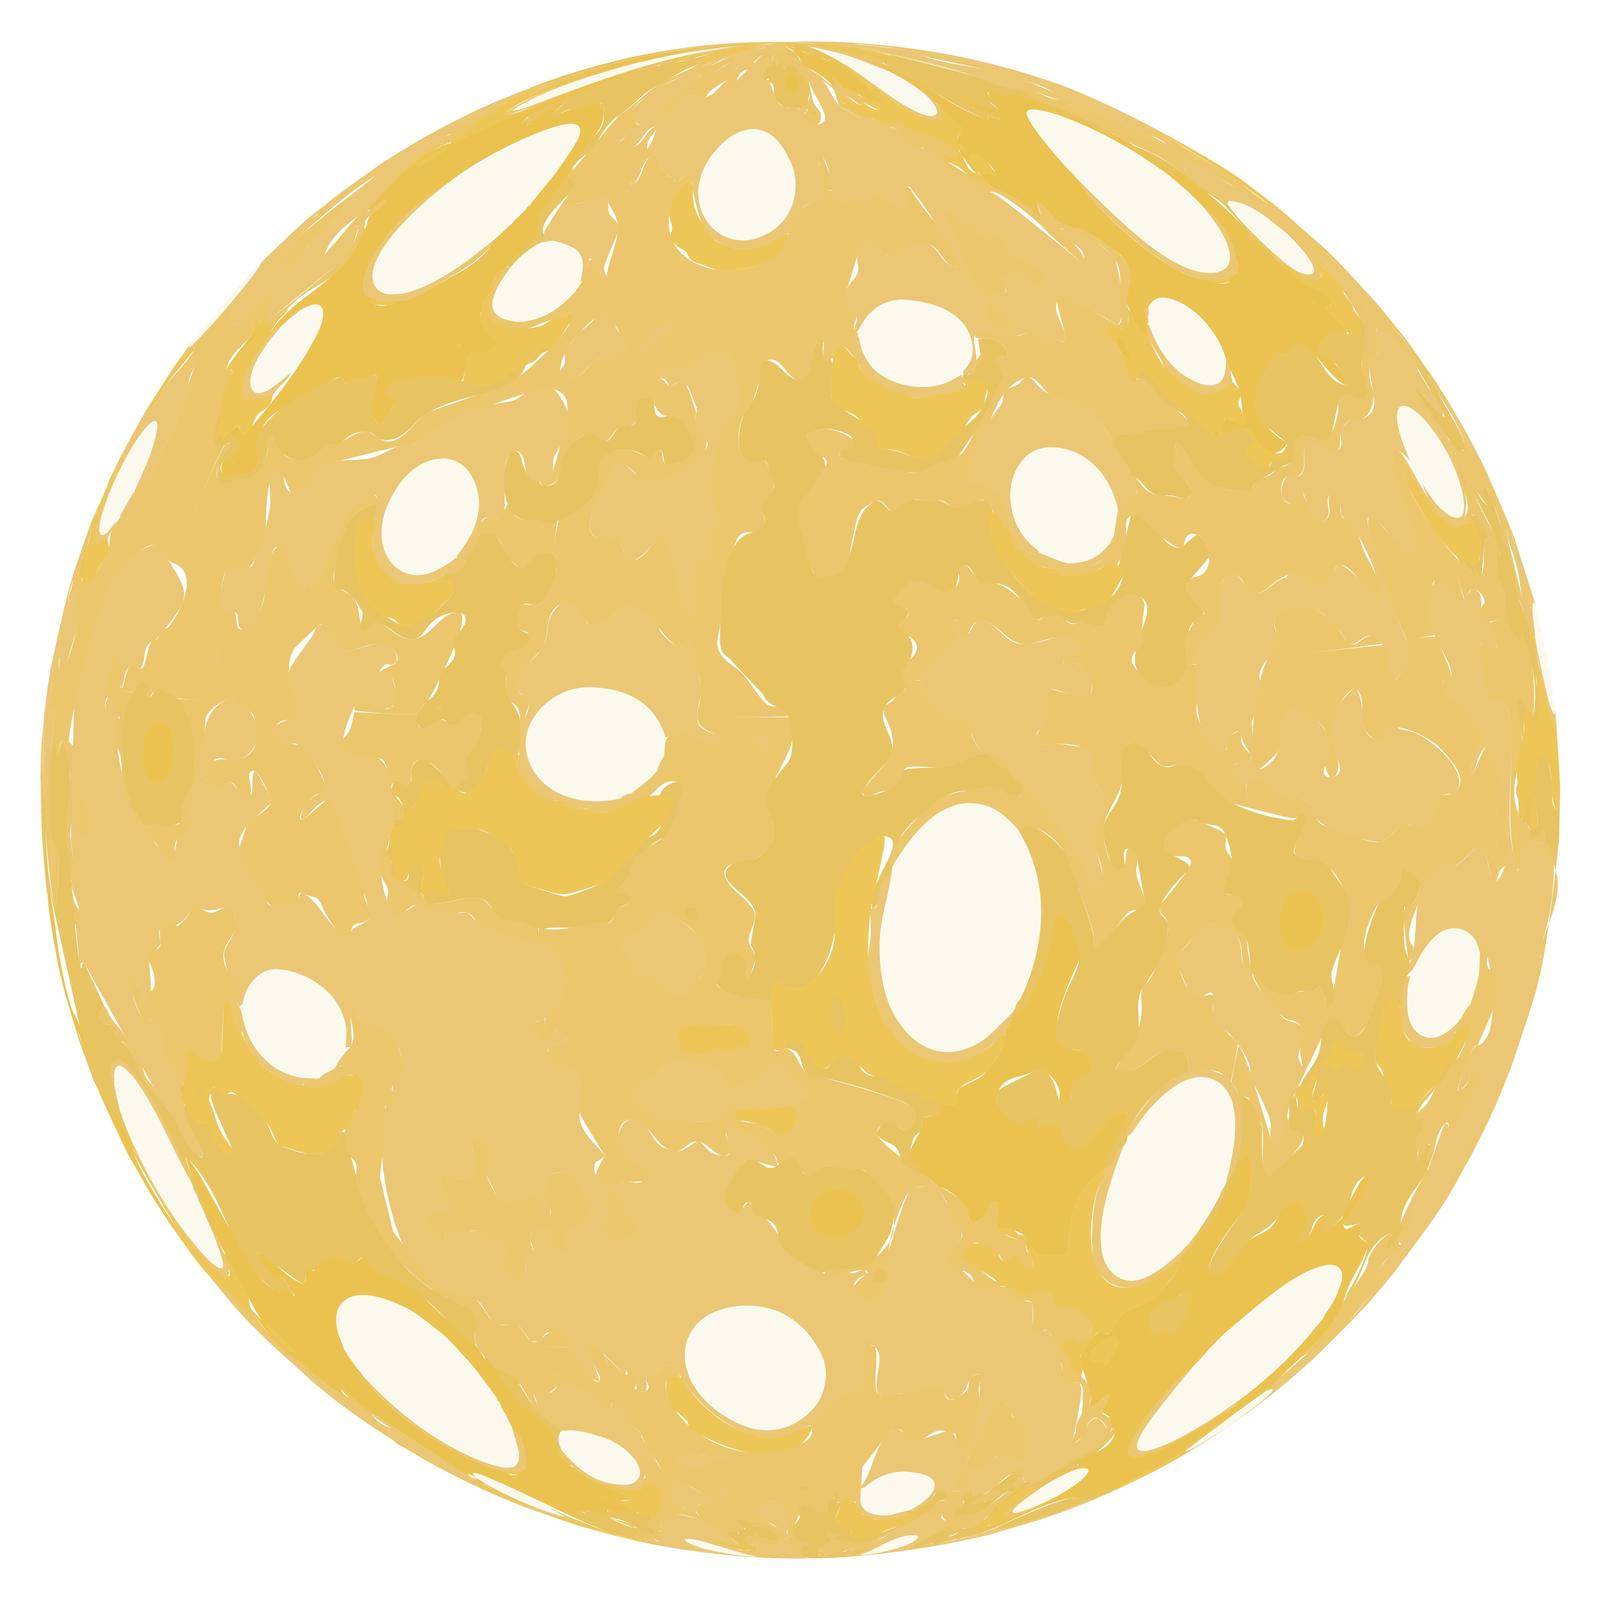 planet of cheese by koksikoks